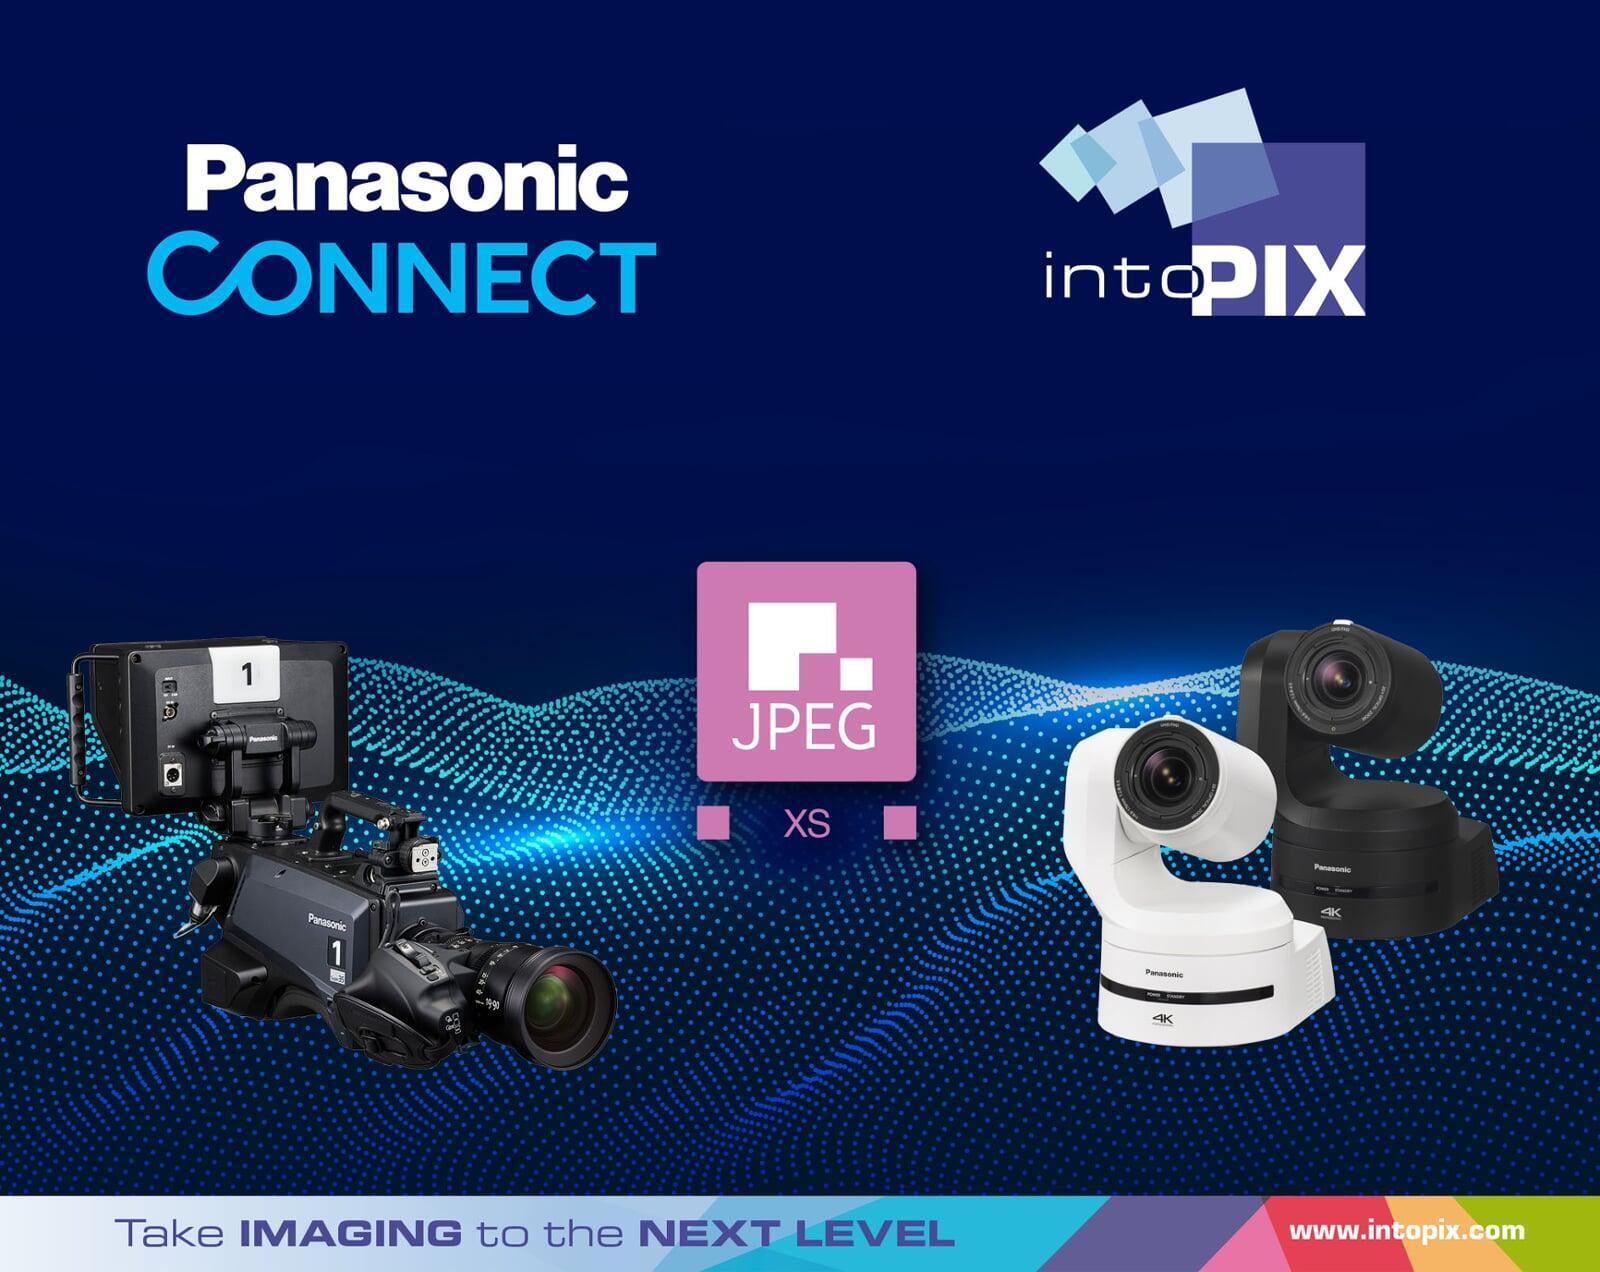 intoPIXは、パナソニックコネクト社と提携し、新しいJPEG XSカメラでライブビデオ制作を可能にします。